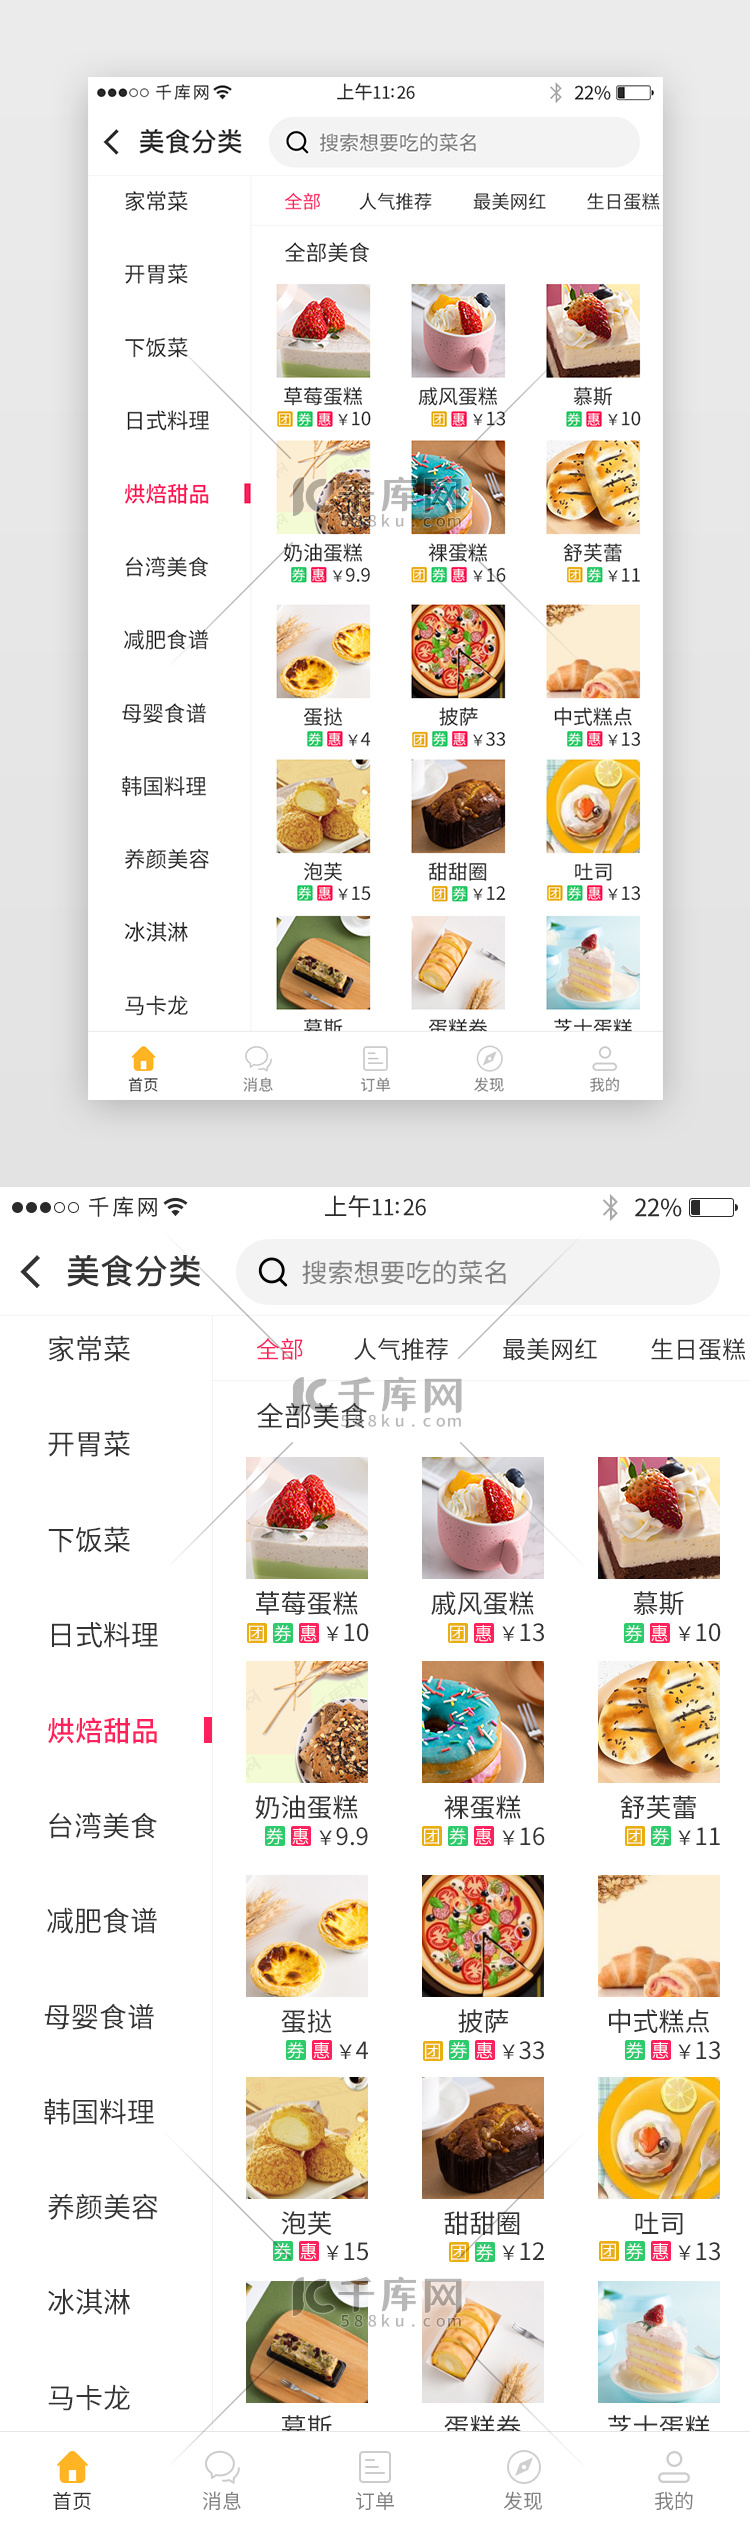 美食app美食分类界面设计